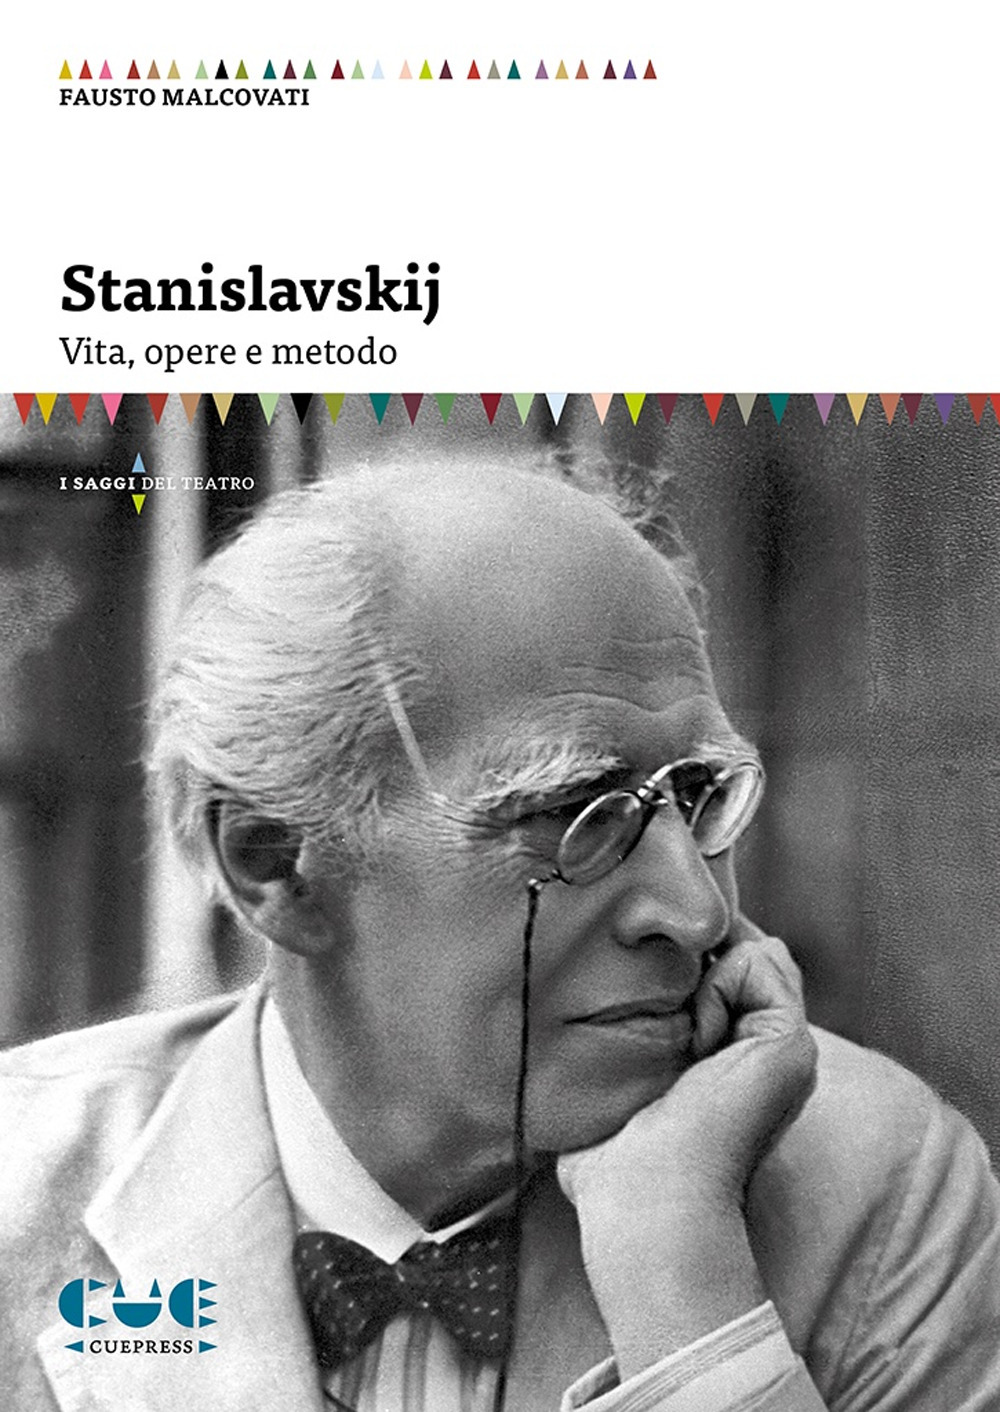 Libri Fausto Malcovati - Stanislavskij. Vita, Opere E Metodo NUOVO SIGILLATO, EDIZIONE DEL 30/11/2021 SUBITO DISPONIBILE